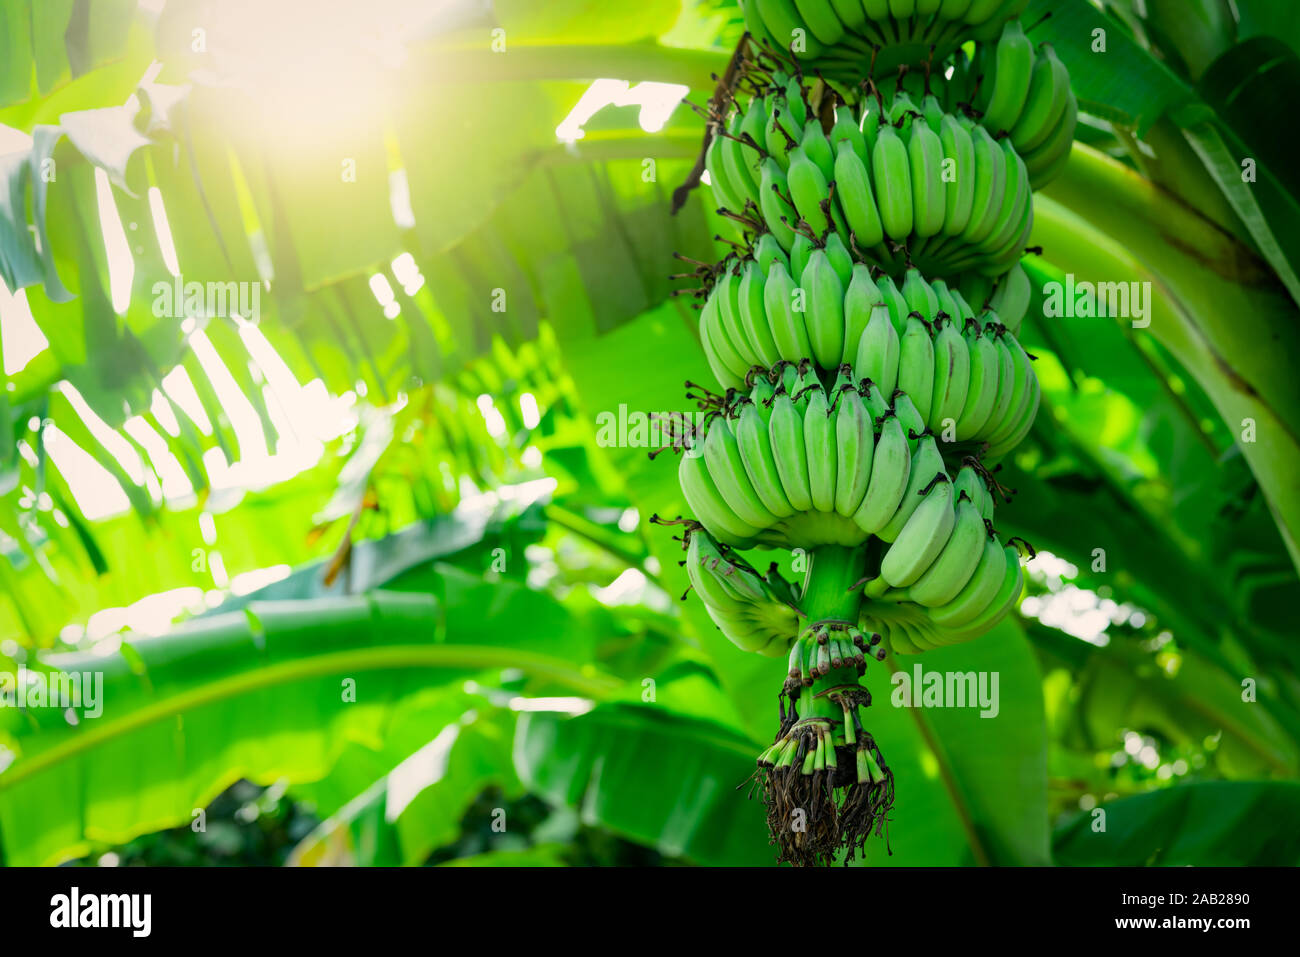 Bananenstaude mit Bündel von Raw grüne Bananen und Bananen grüne Blätter. Kultiviert Bananenplantage. Tropic Fruit Farm. Pflanzliche Arzneimittel zur Behandlung Stockfoto